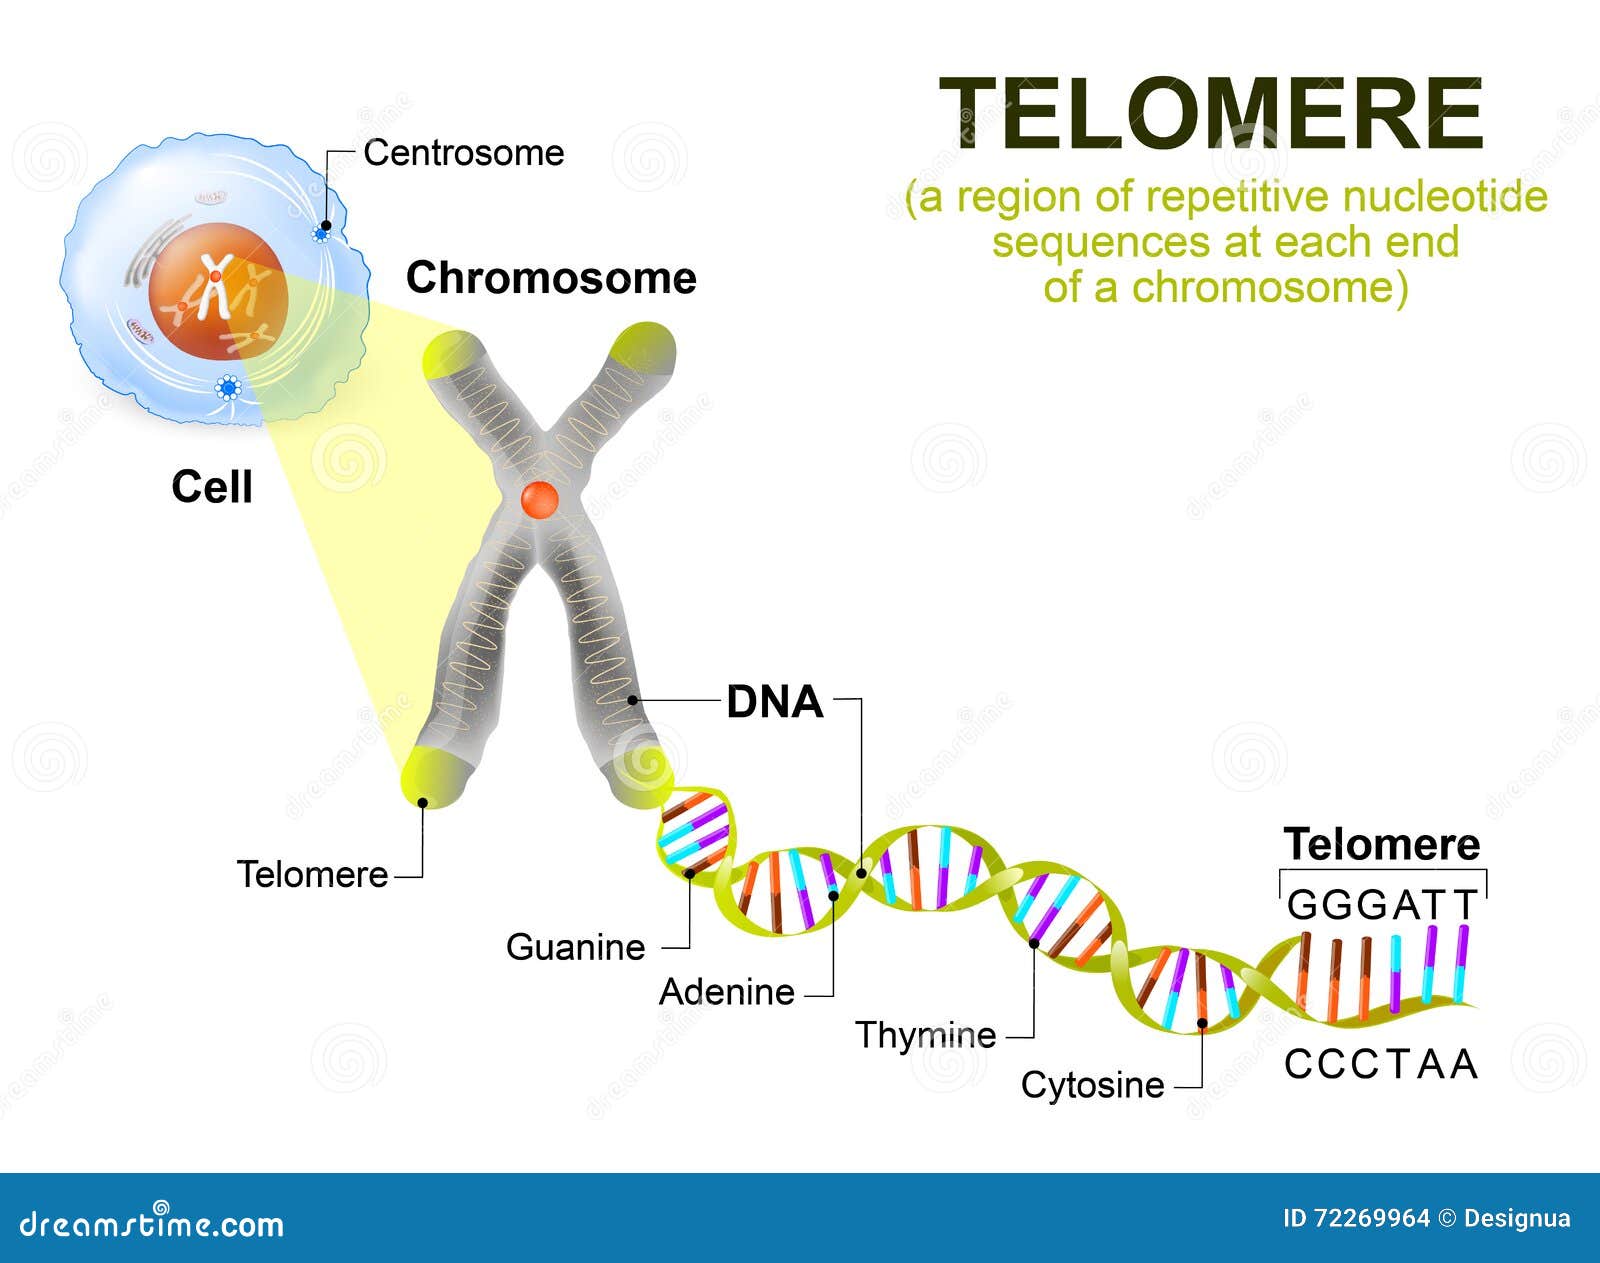 Menschliche Zelle Chromosom Und Telomere Vektor Abbildung Illustration Von Divide Enzym